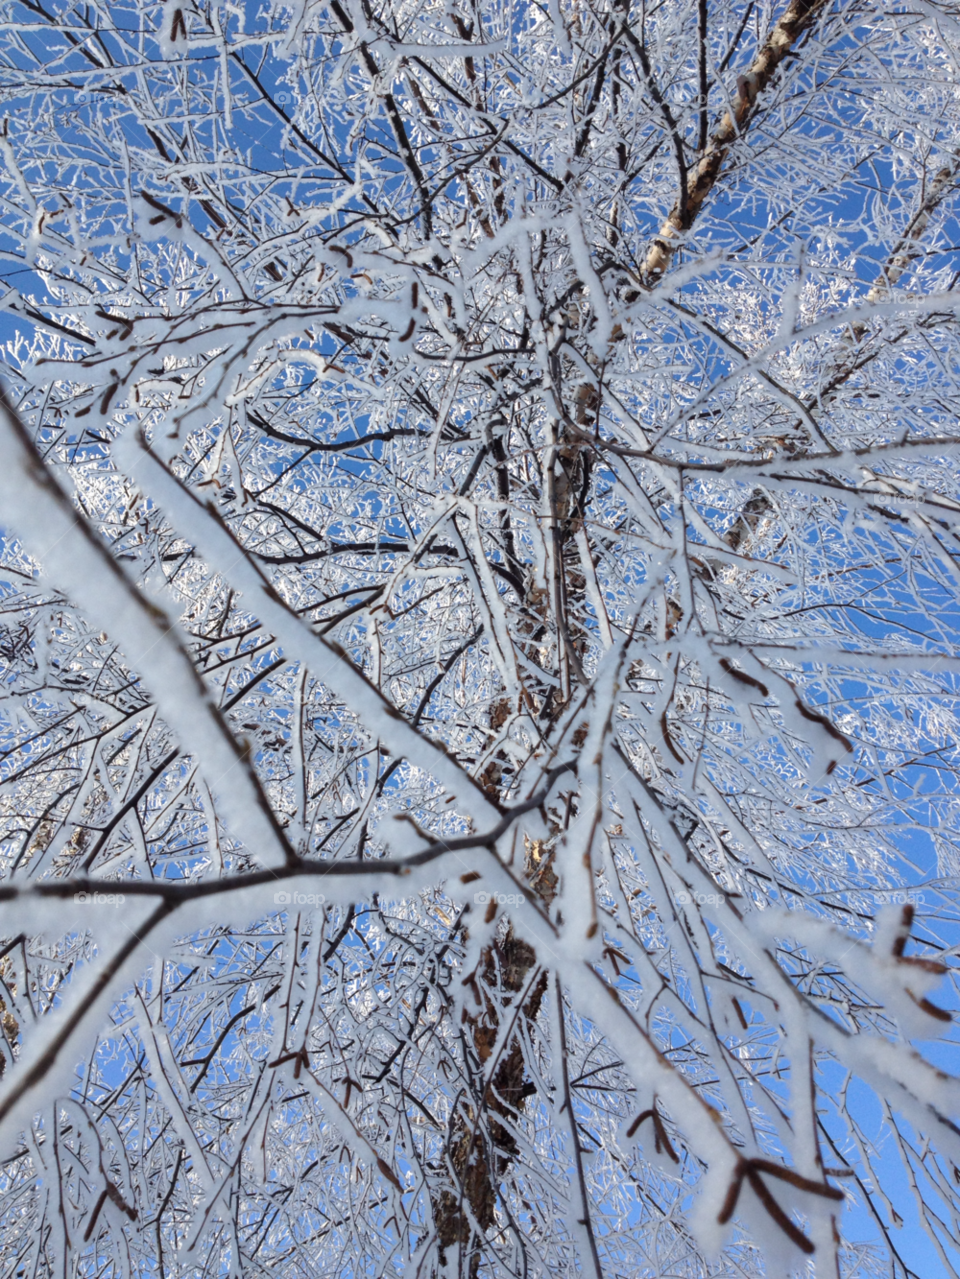 snow winter sky blue by kimcneil92